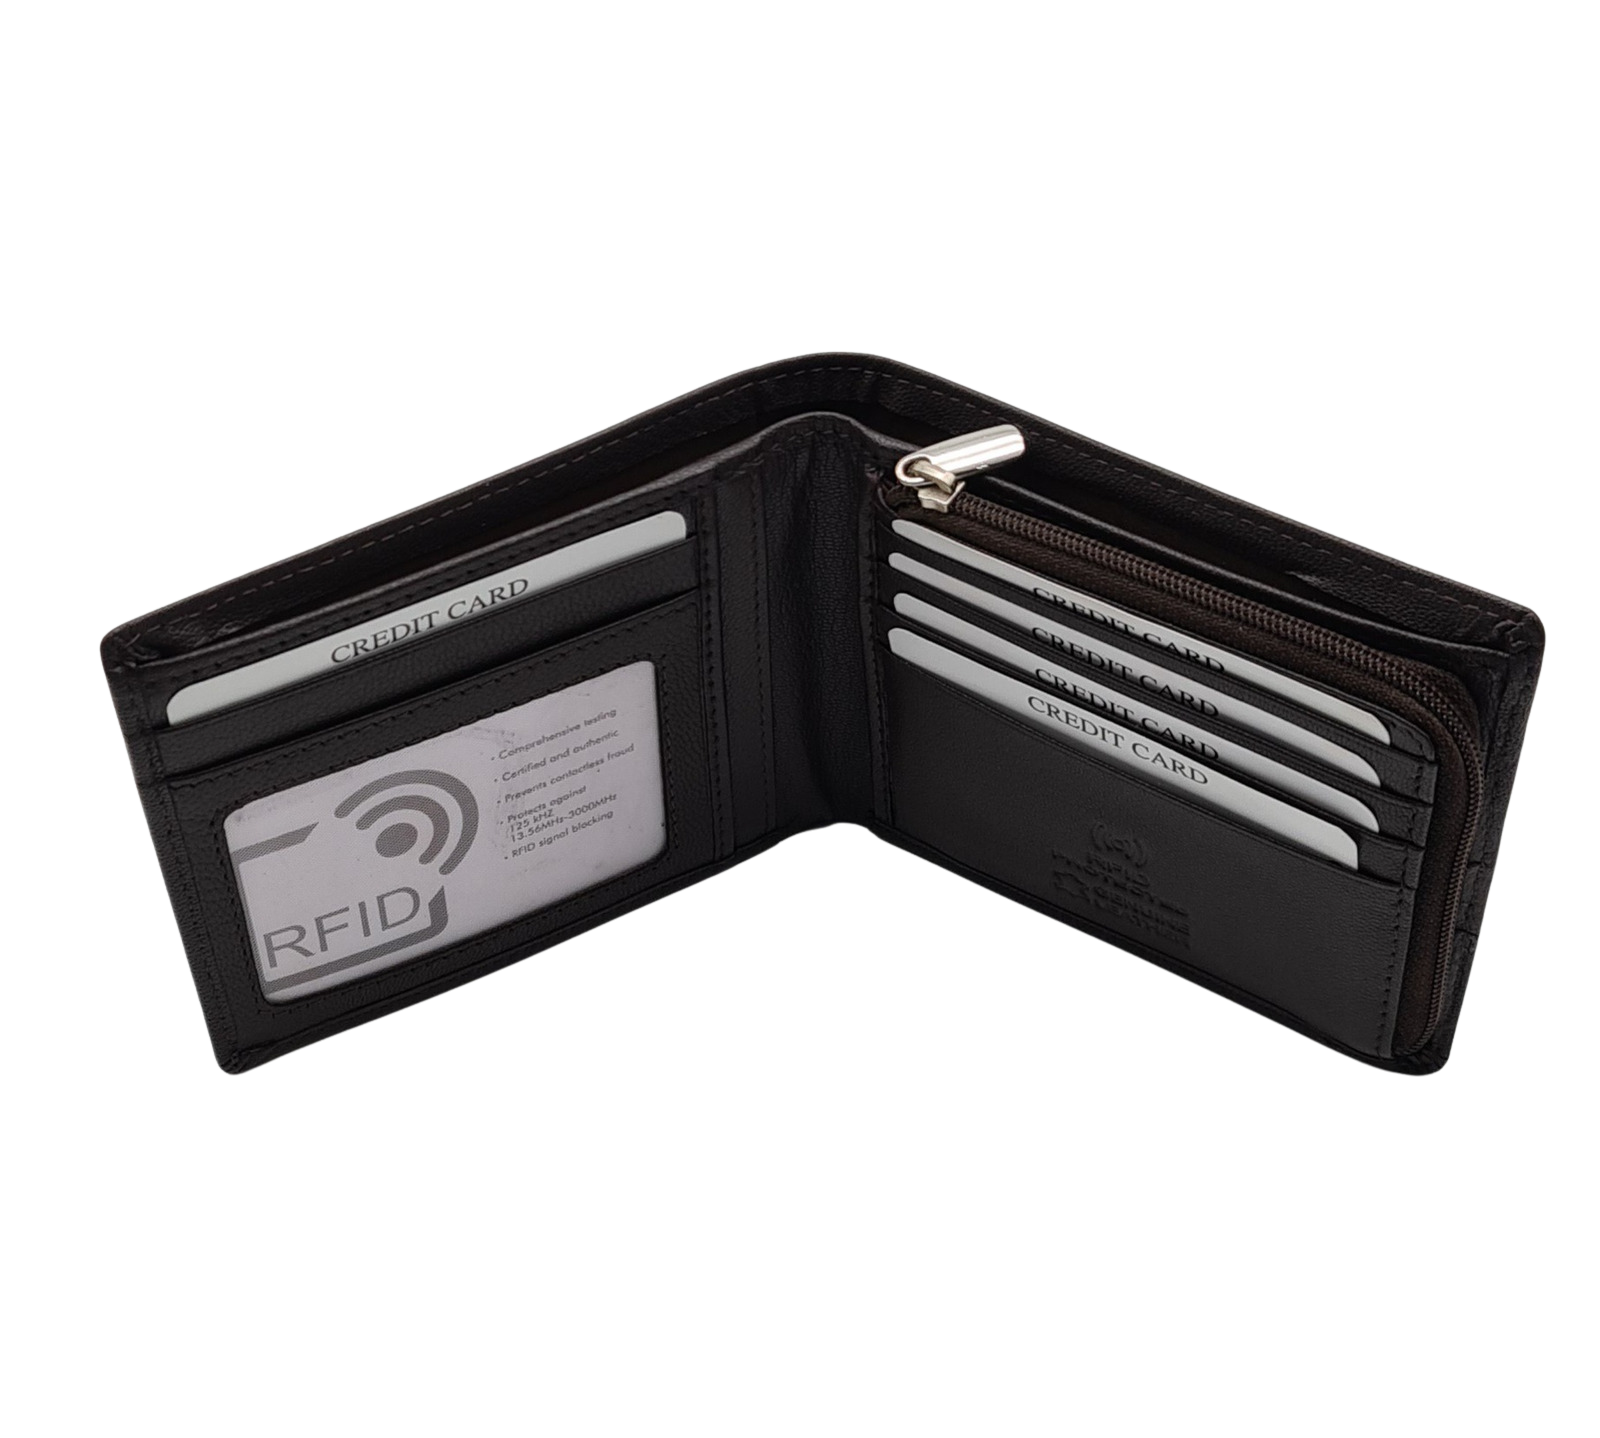 Migant design leather men wallet with RFID 6431 - Migant